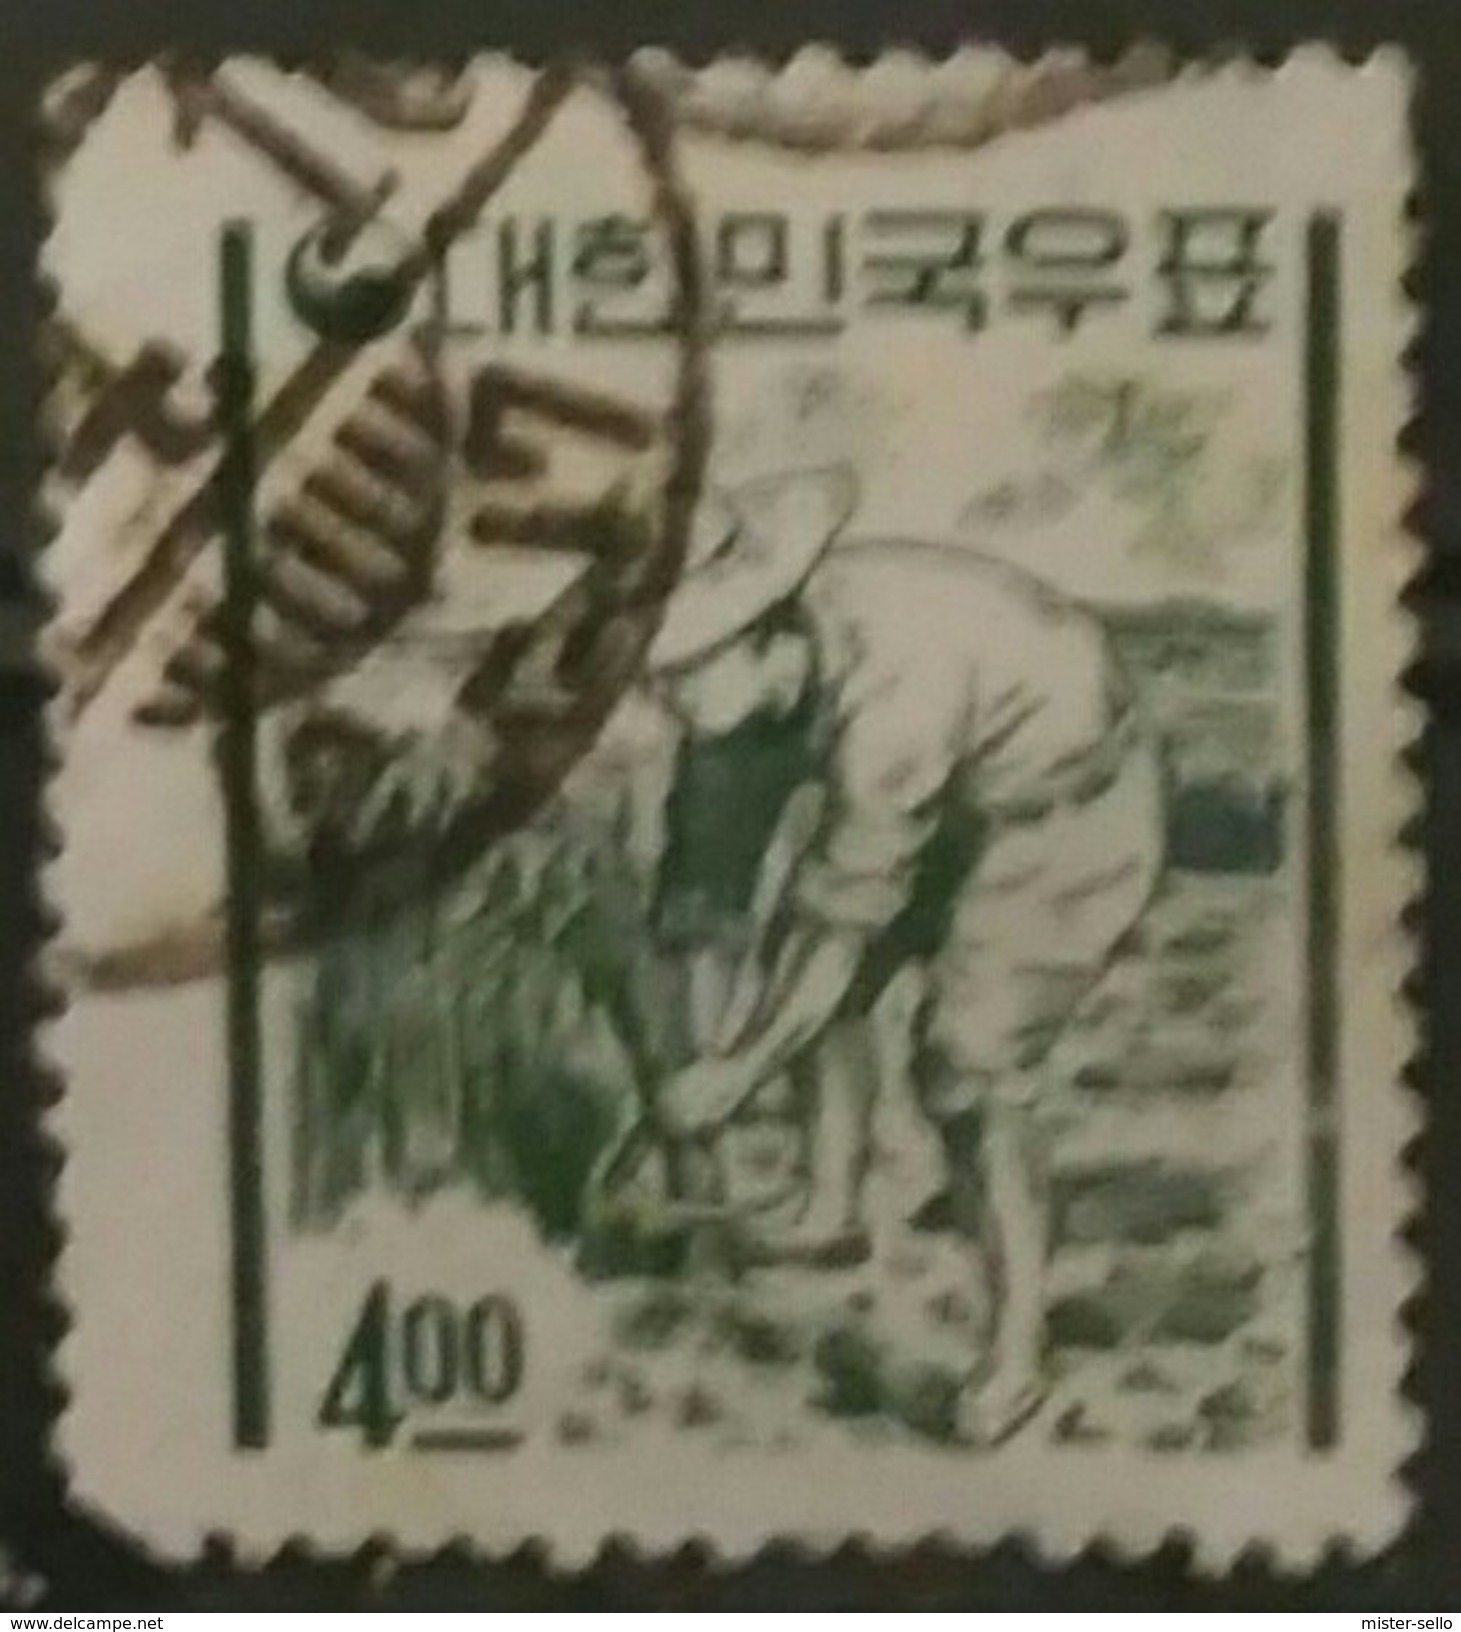 COREA DEL SUR 1962 -1963 Iconos Nacionales En La Nueva Moneda. USADO - USED. - Corea Del Sud